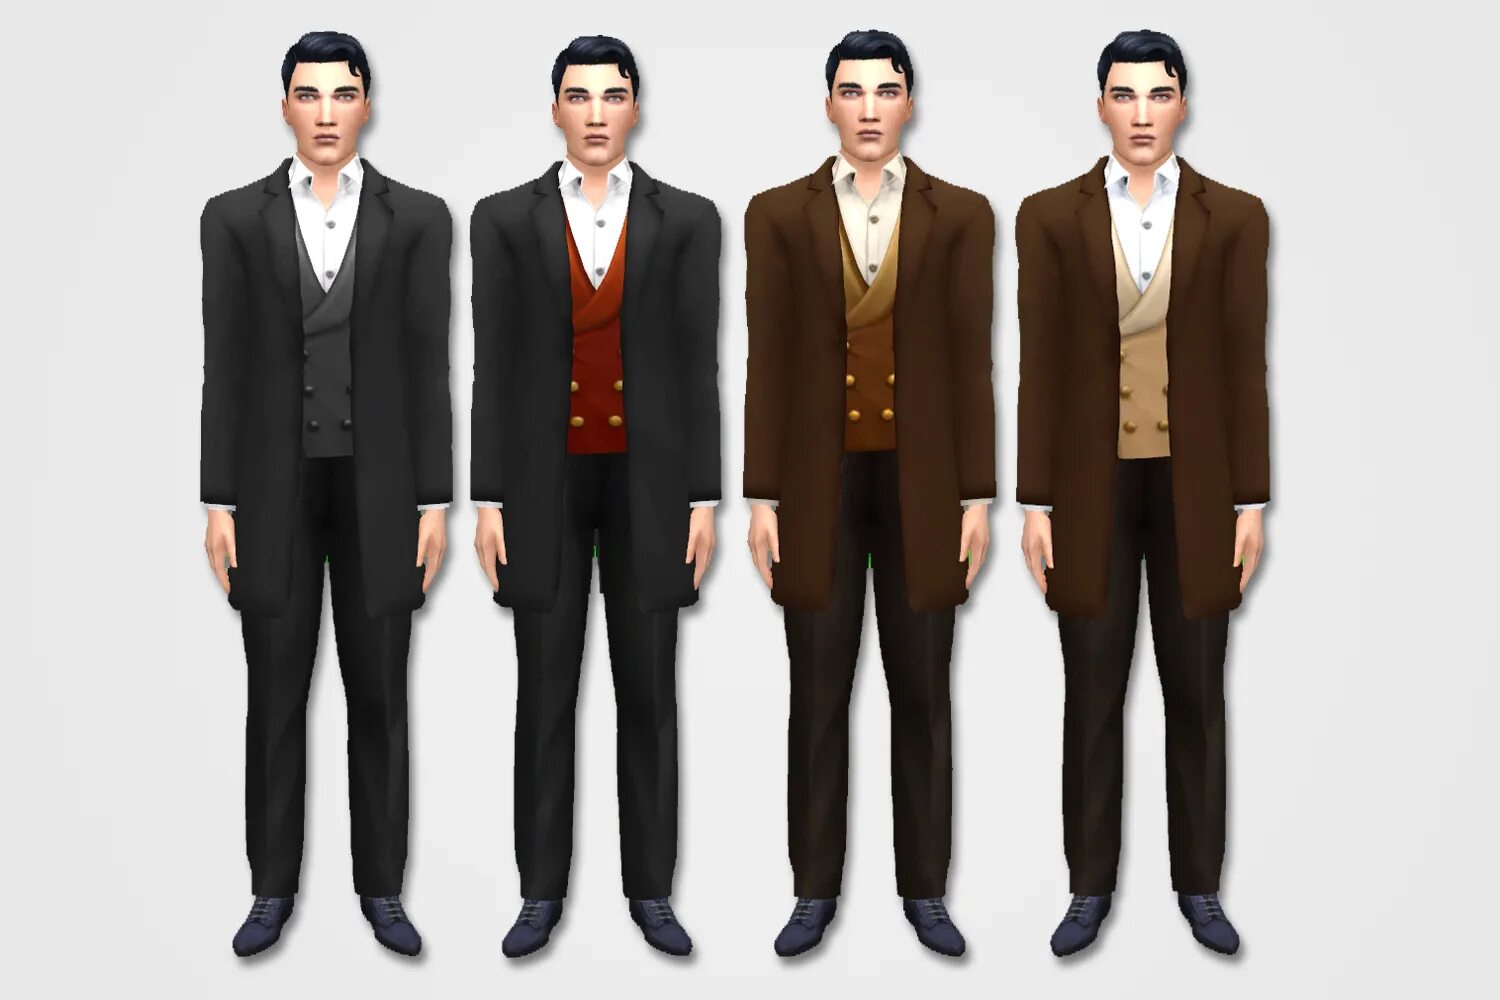 SIMS 4 clothes Suit. Симс 4 Викторианская одежда мужская. Victorian men Suits для симс 4. Симс 4 пиджак с жилетом. Симс моды рабочие